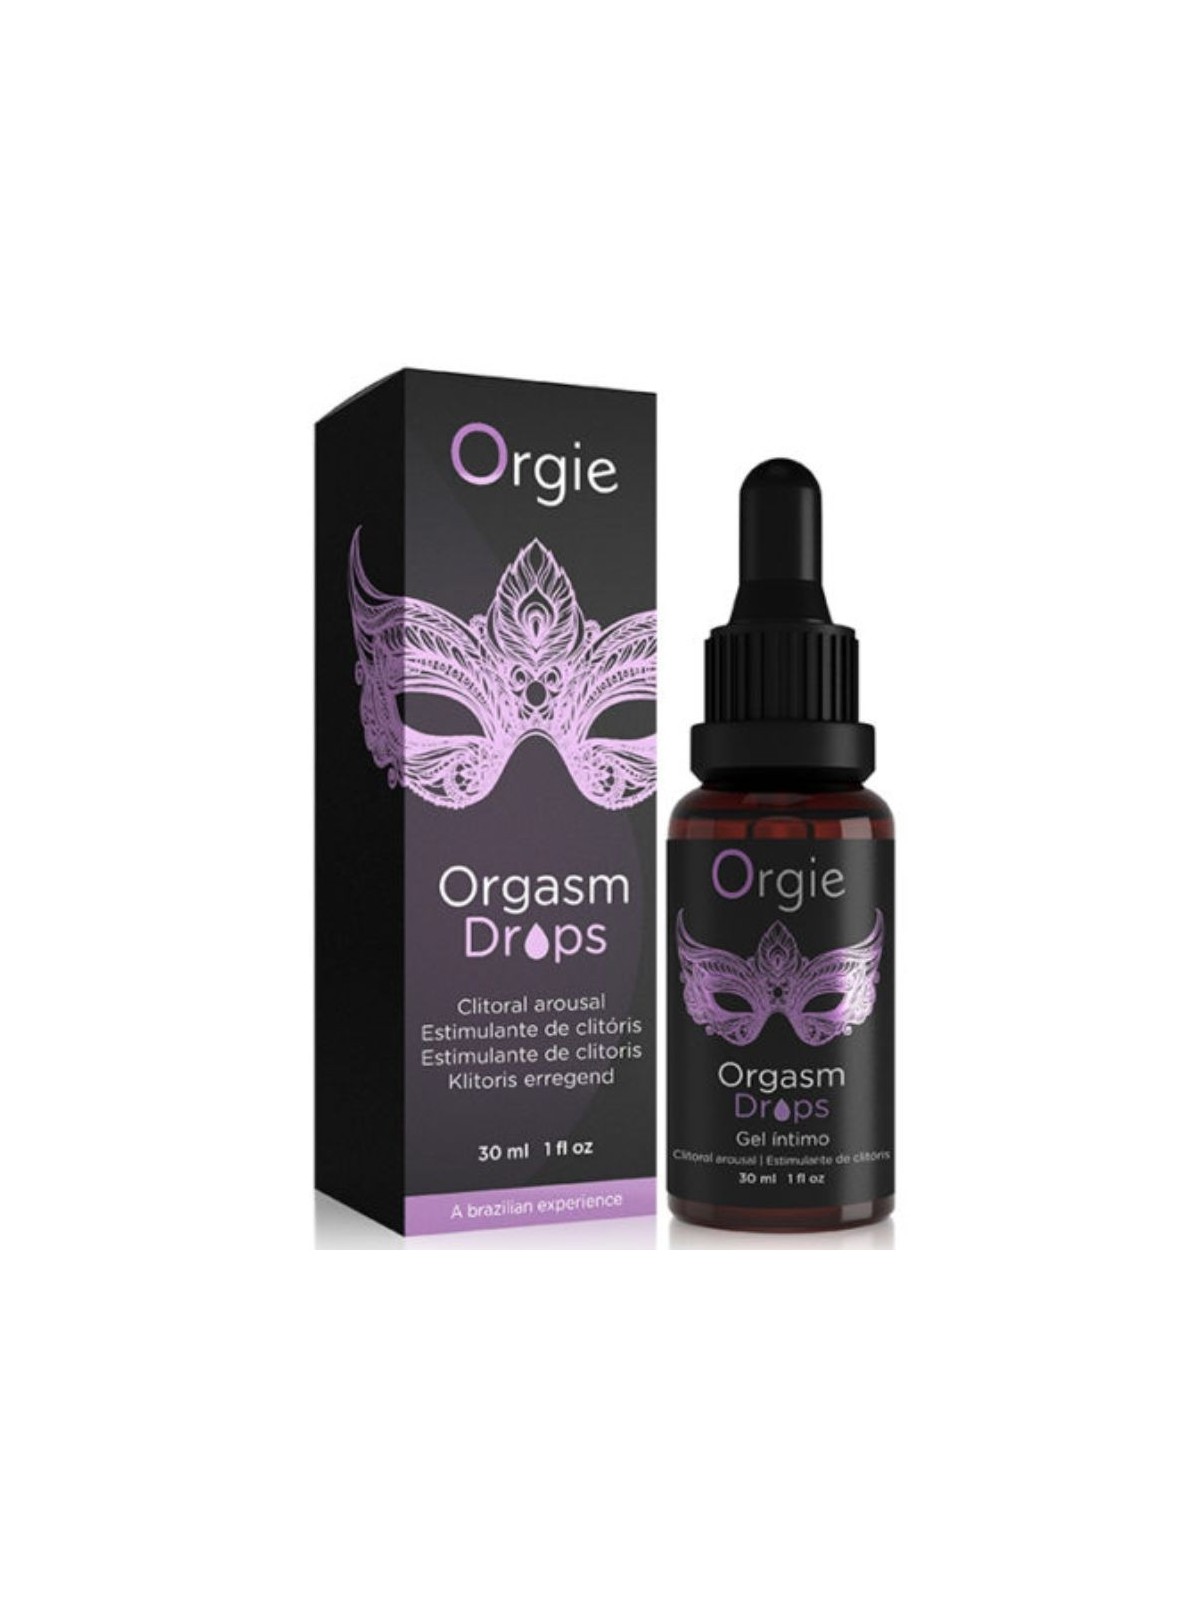 Orgie Orgasm Drops Gotas Estimulantes Clítoris 30 ml - Comprar Gel estimulante mujer Orgie - Libido & orgasmo femenino (1)